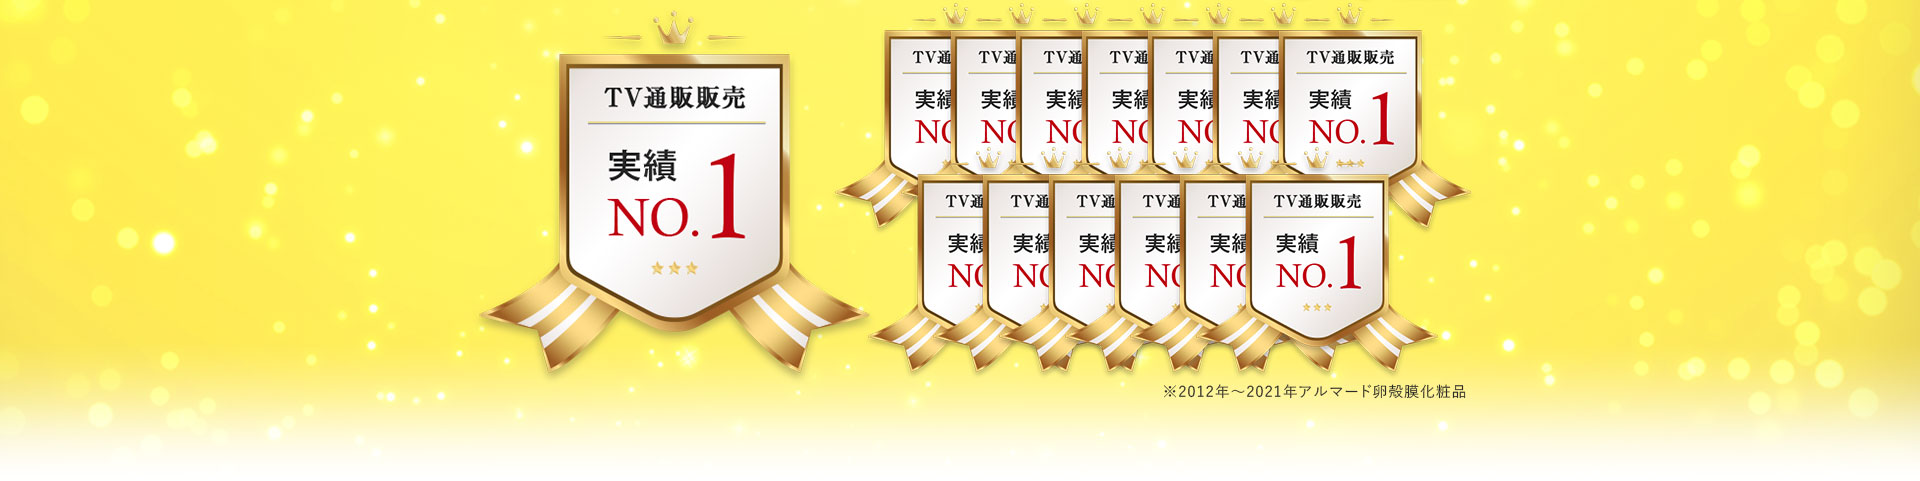 TV通販販売実績NO.1 ※2012年～2020年アルマード卵殻膜化粧品